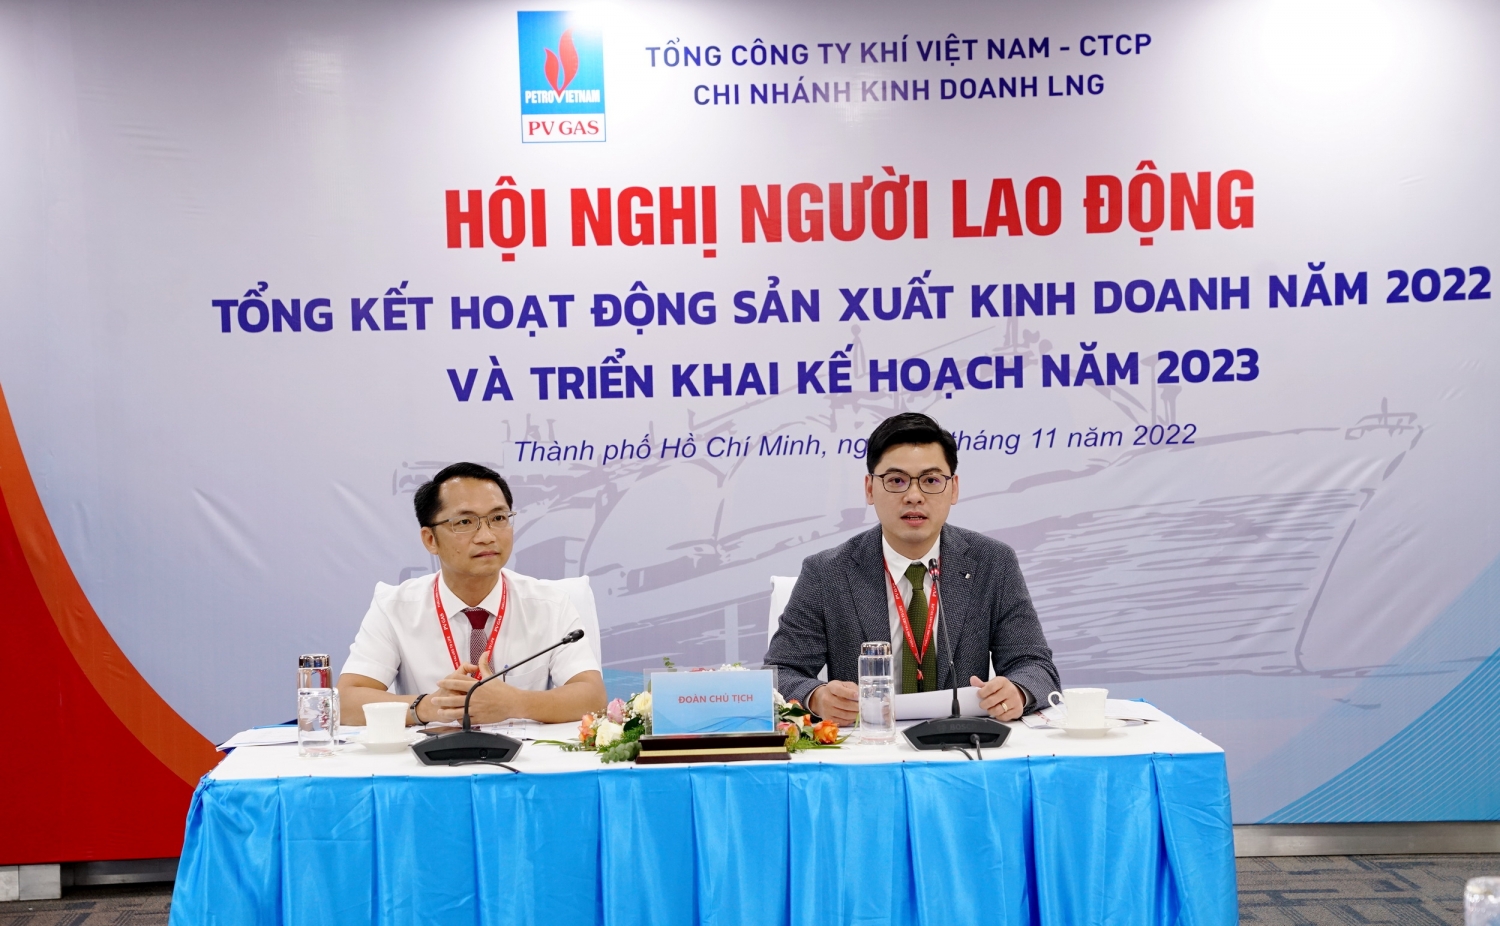 Ban giám đốc chi nhánh PV GAS LNG chủ trì hội nghị cán bộ năm 2022